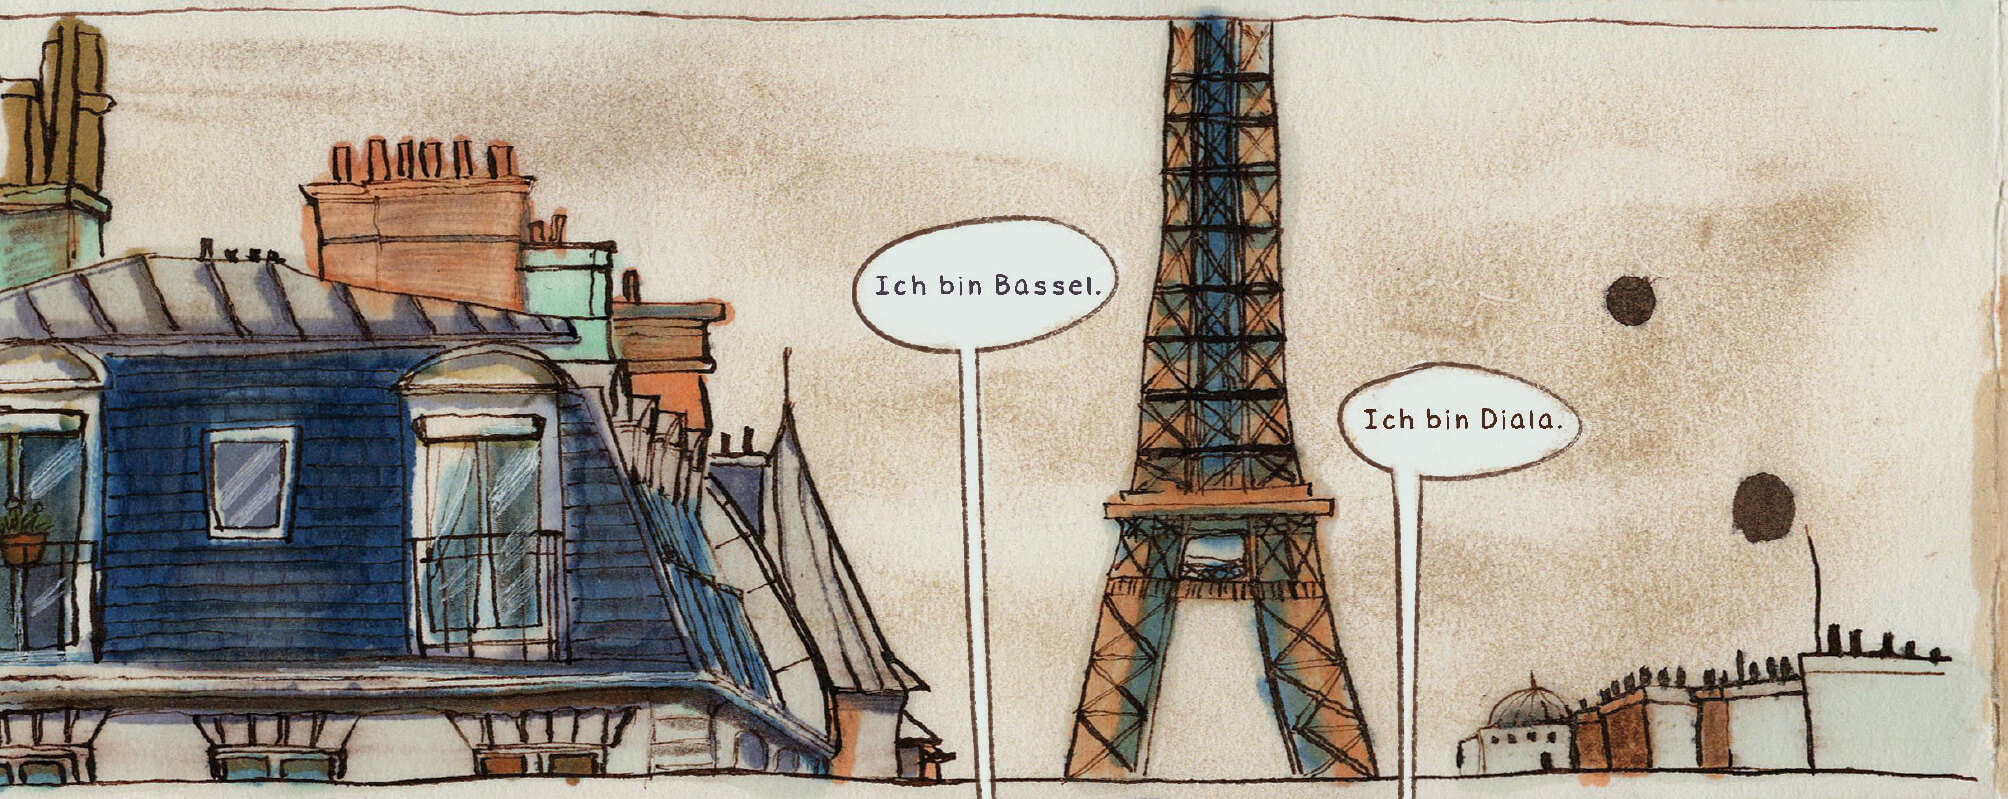 erstes Treffen von Diala und Bassel in Paris, S. 16